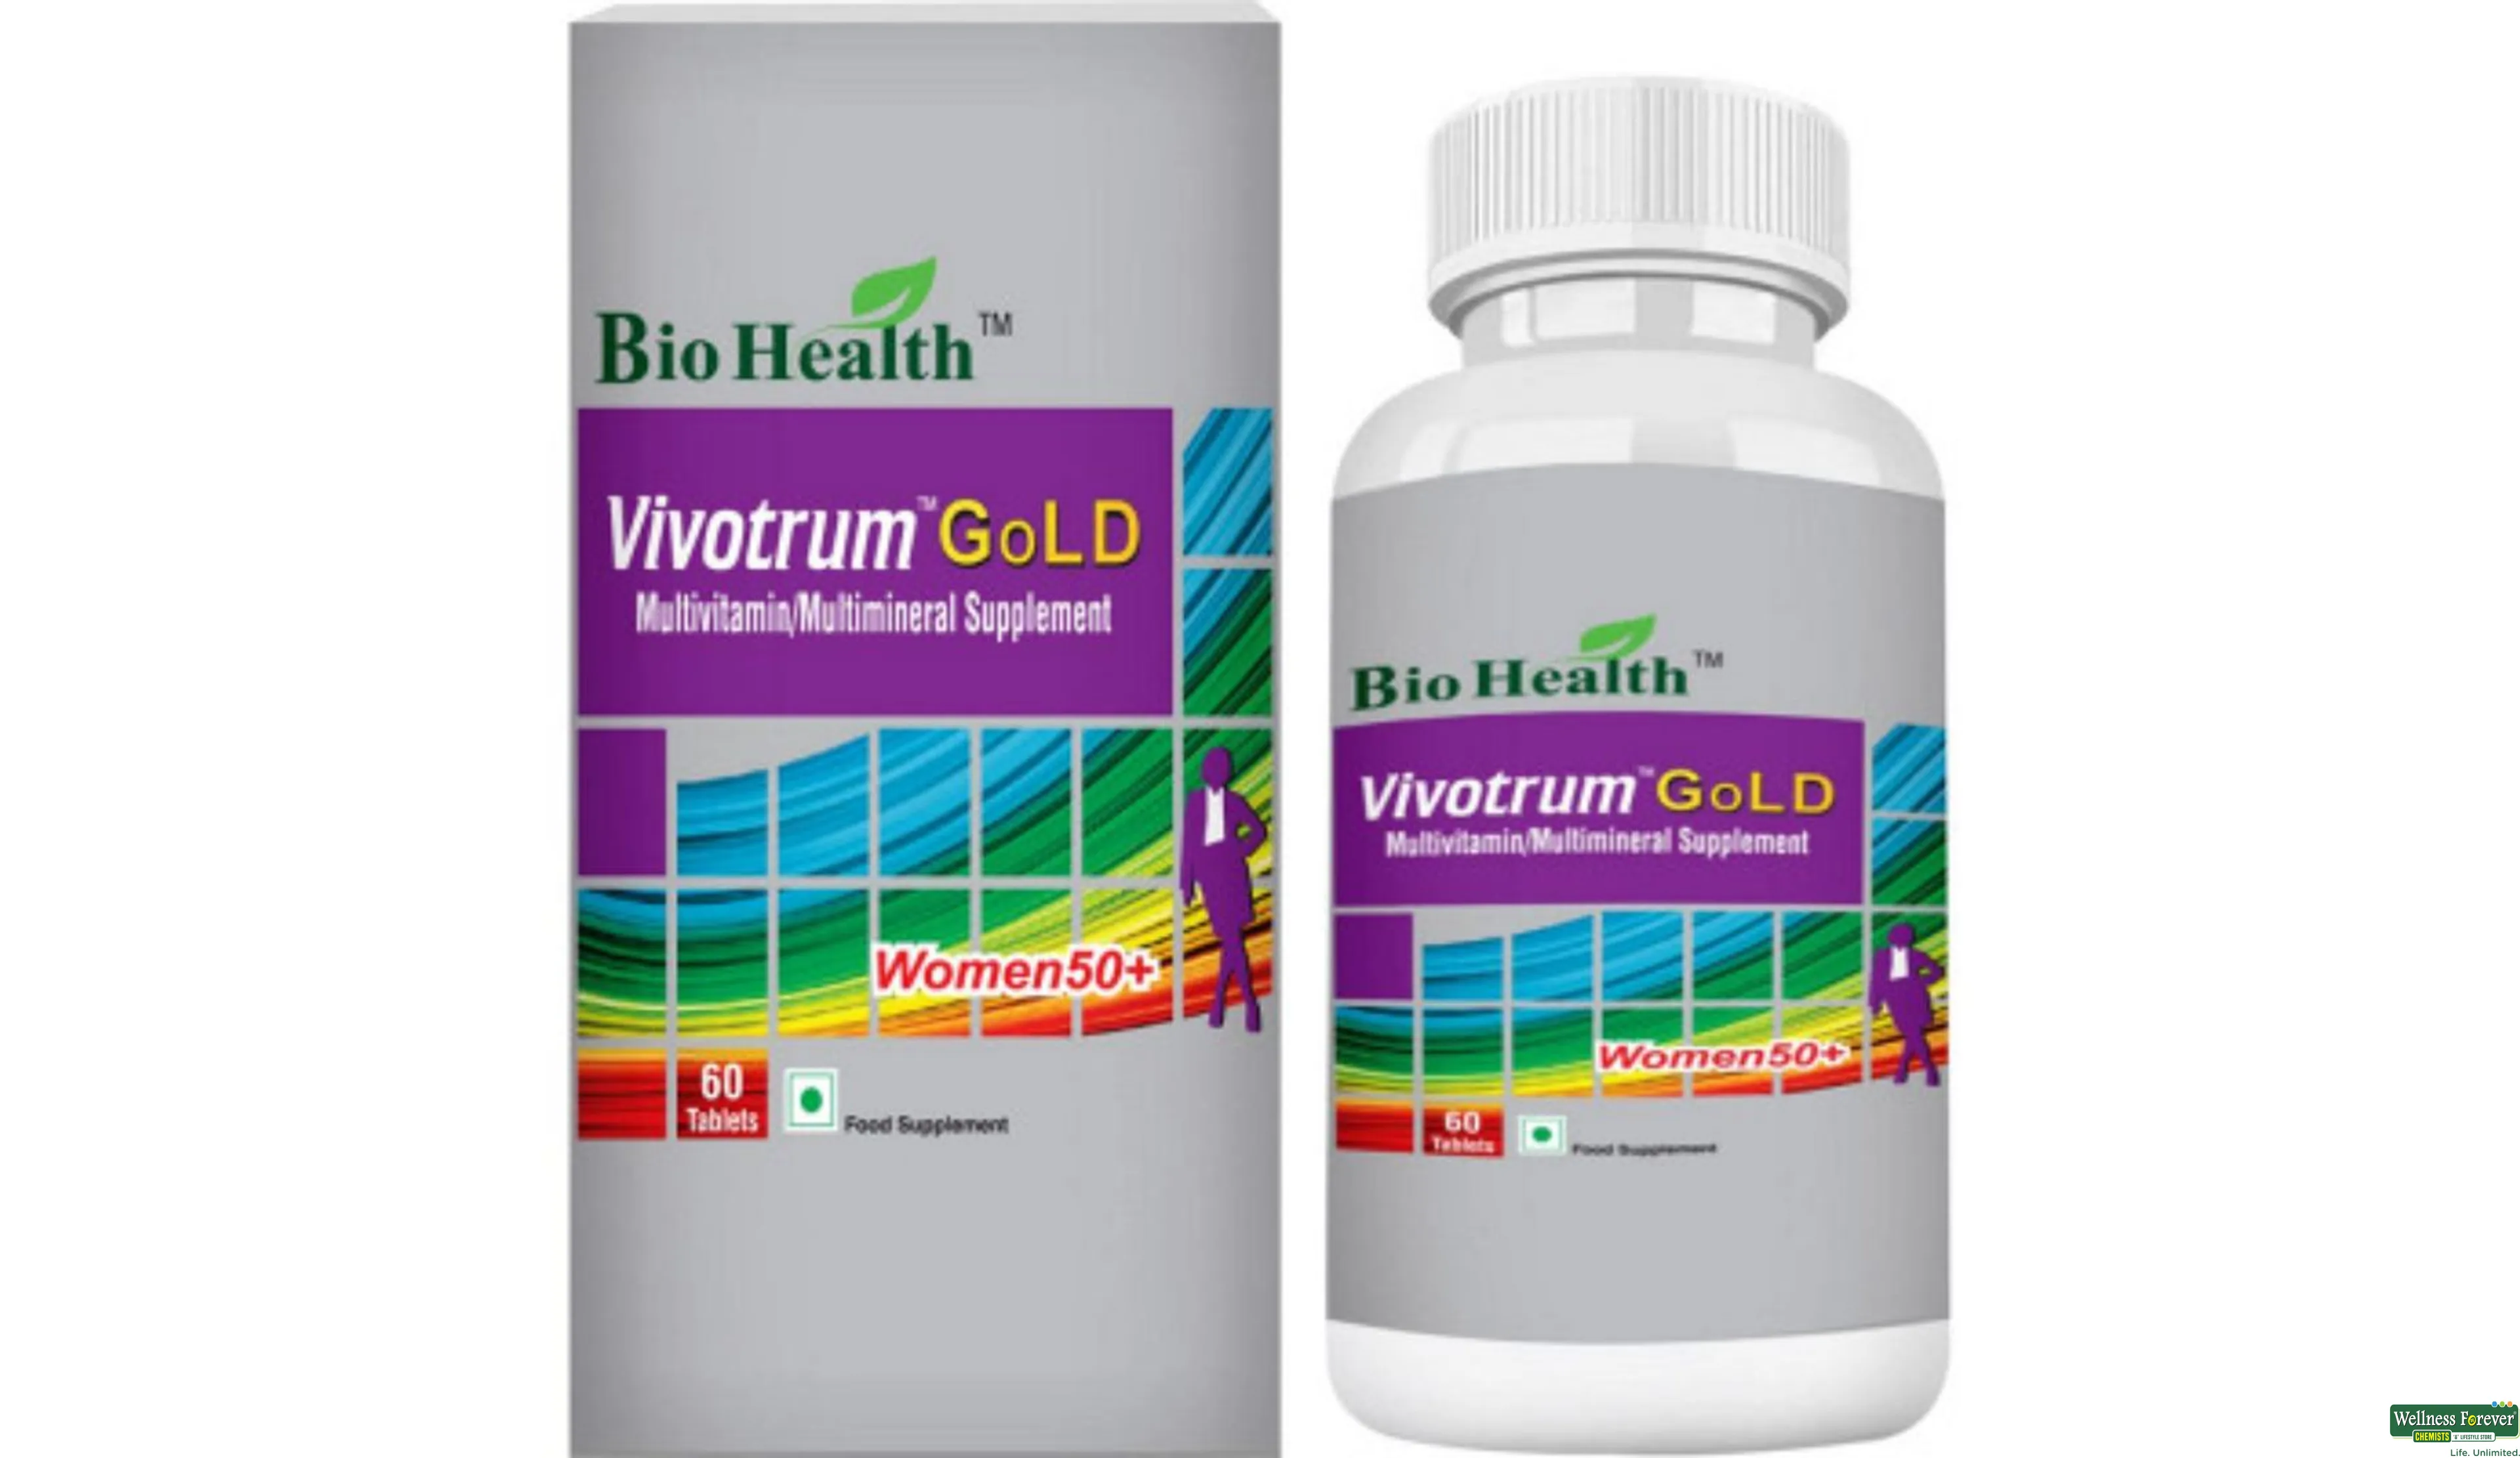 BIOHEALTH VIVOTRUM GOLD WOMEN50+ 60TAB- 1, 60TAB, 